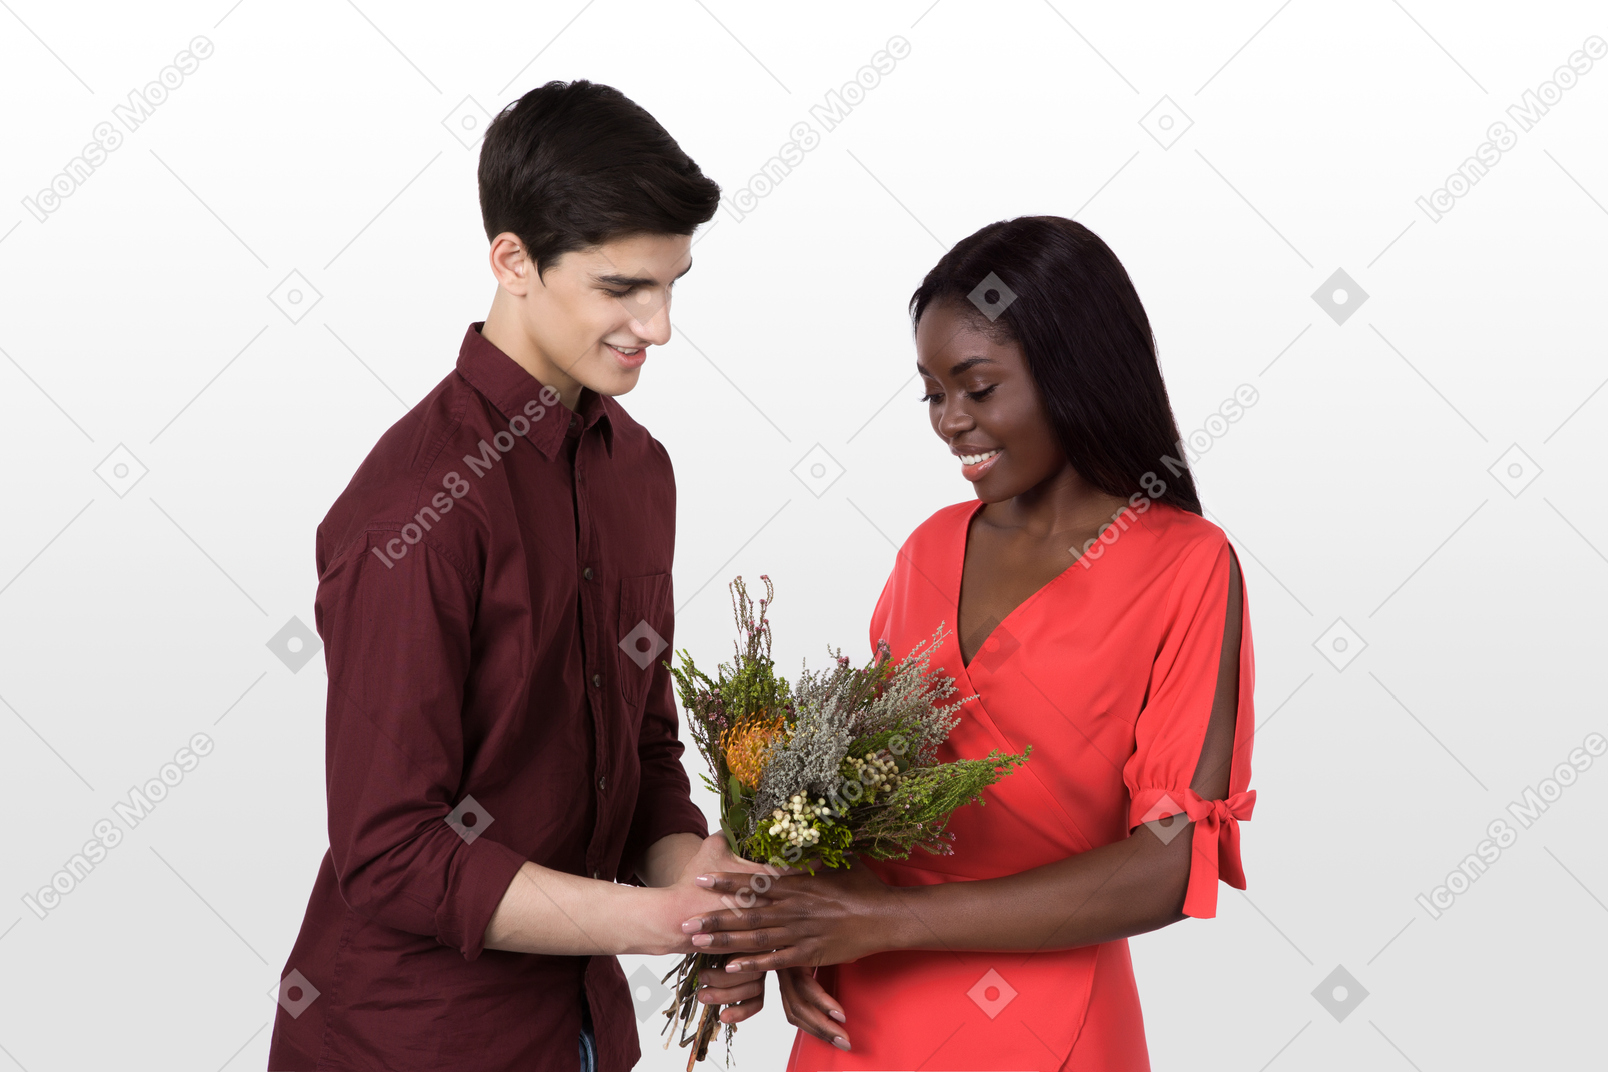 Permets-moi de te donner ce bouquet, mon amour